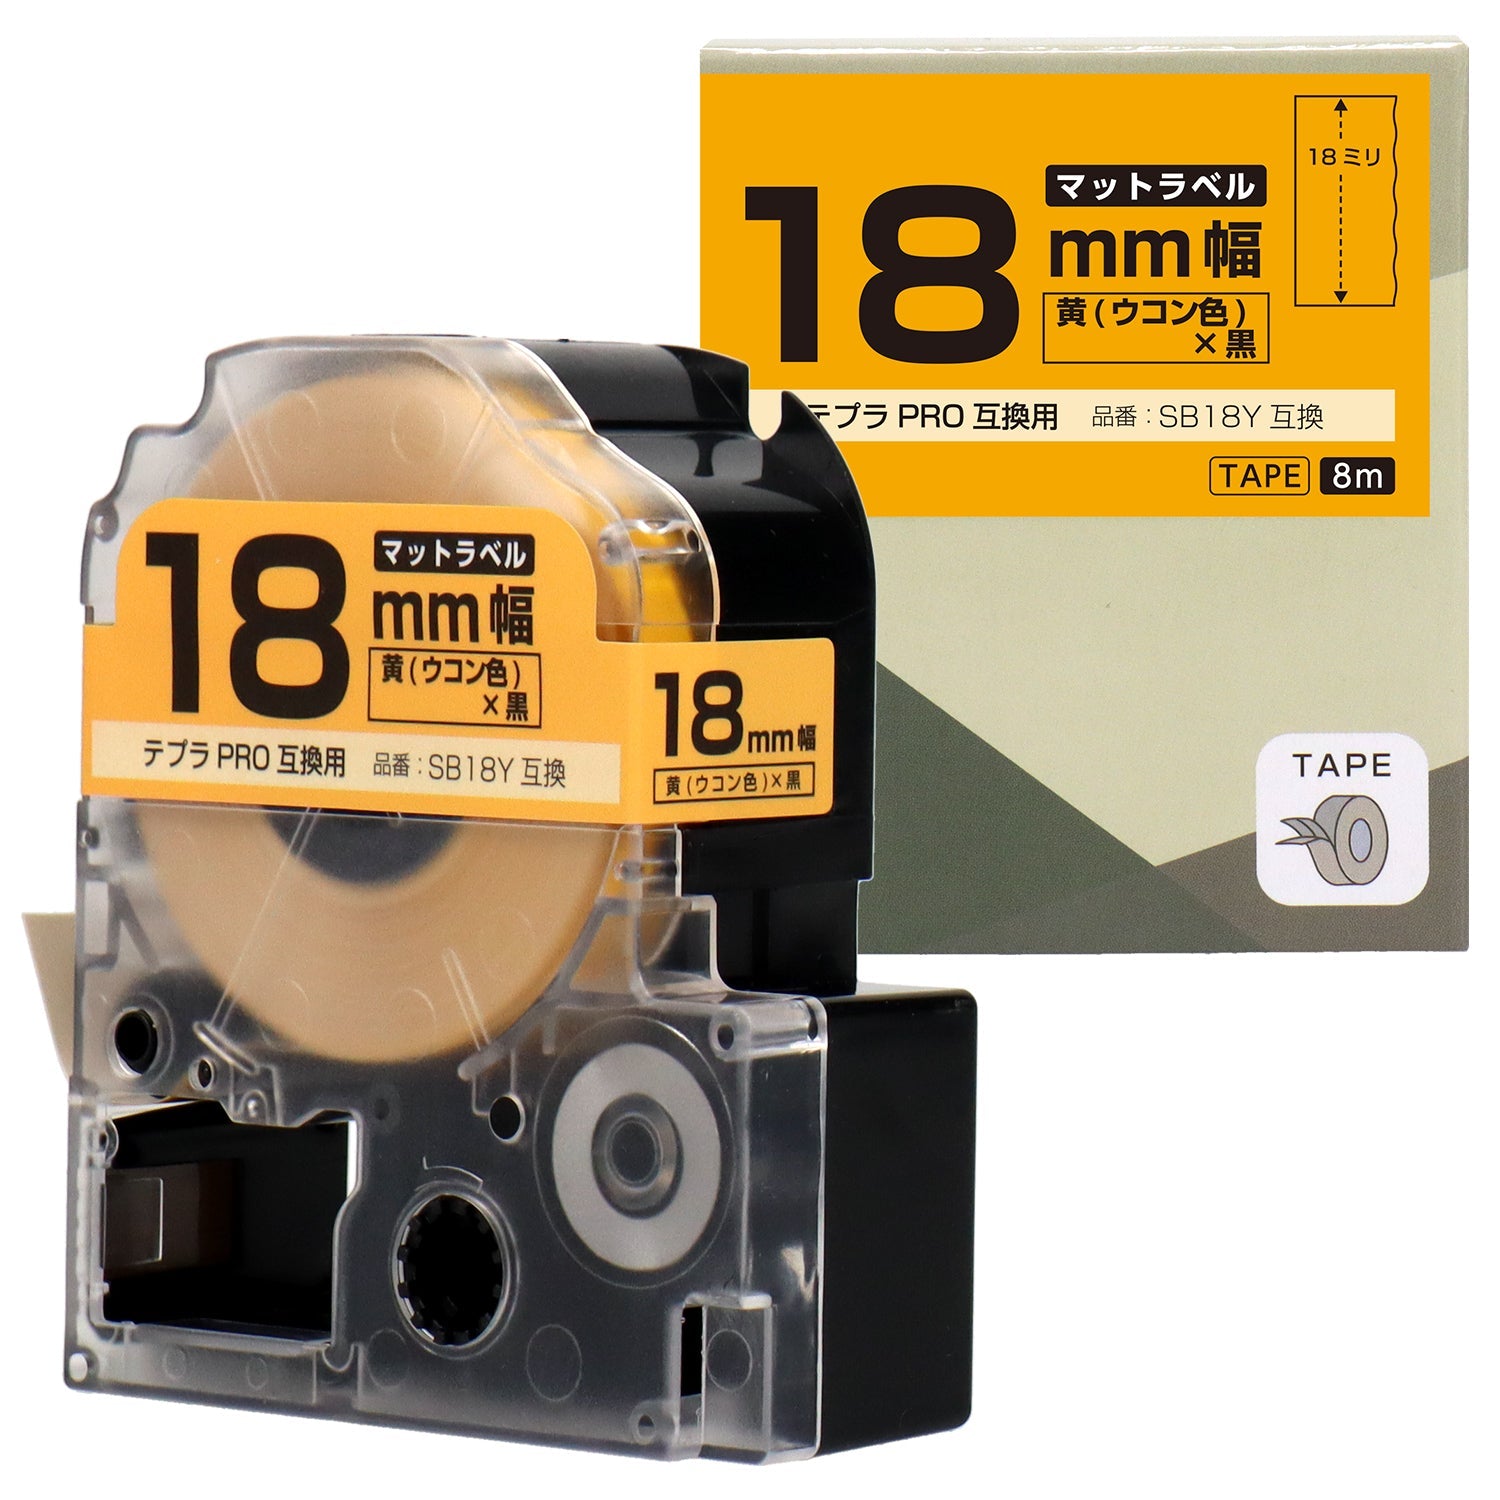 テプラPRO用互換テープカートリッジ マット黄×黒文字 18mm